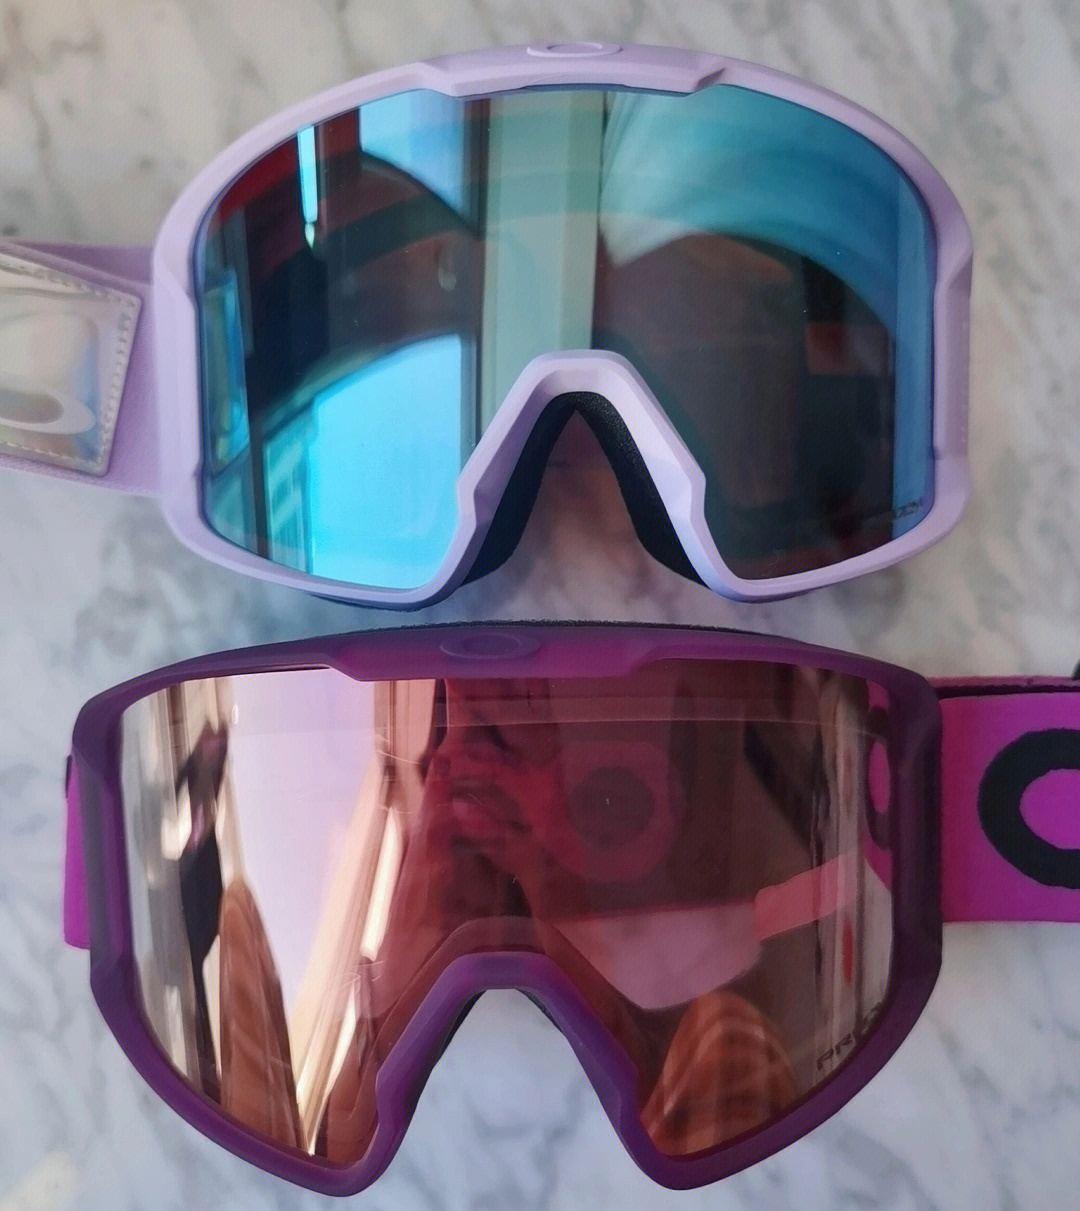 uvex和oakley滑雪镜图片